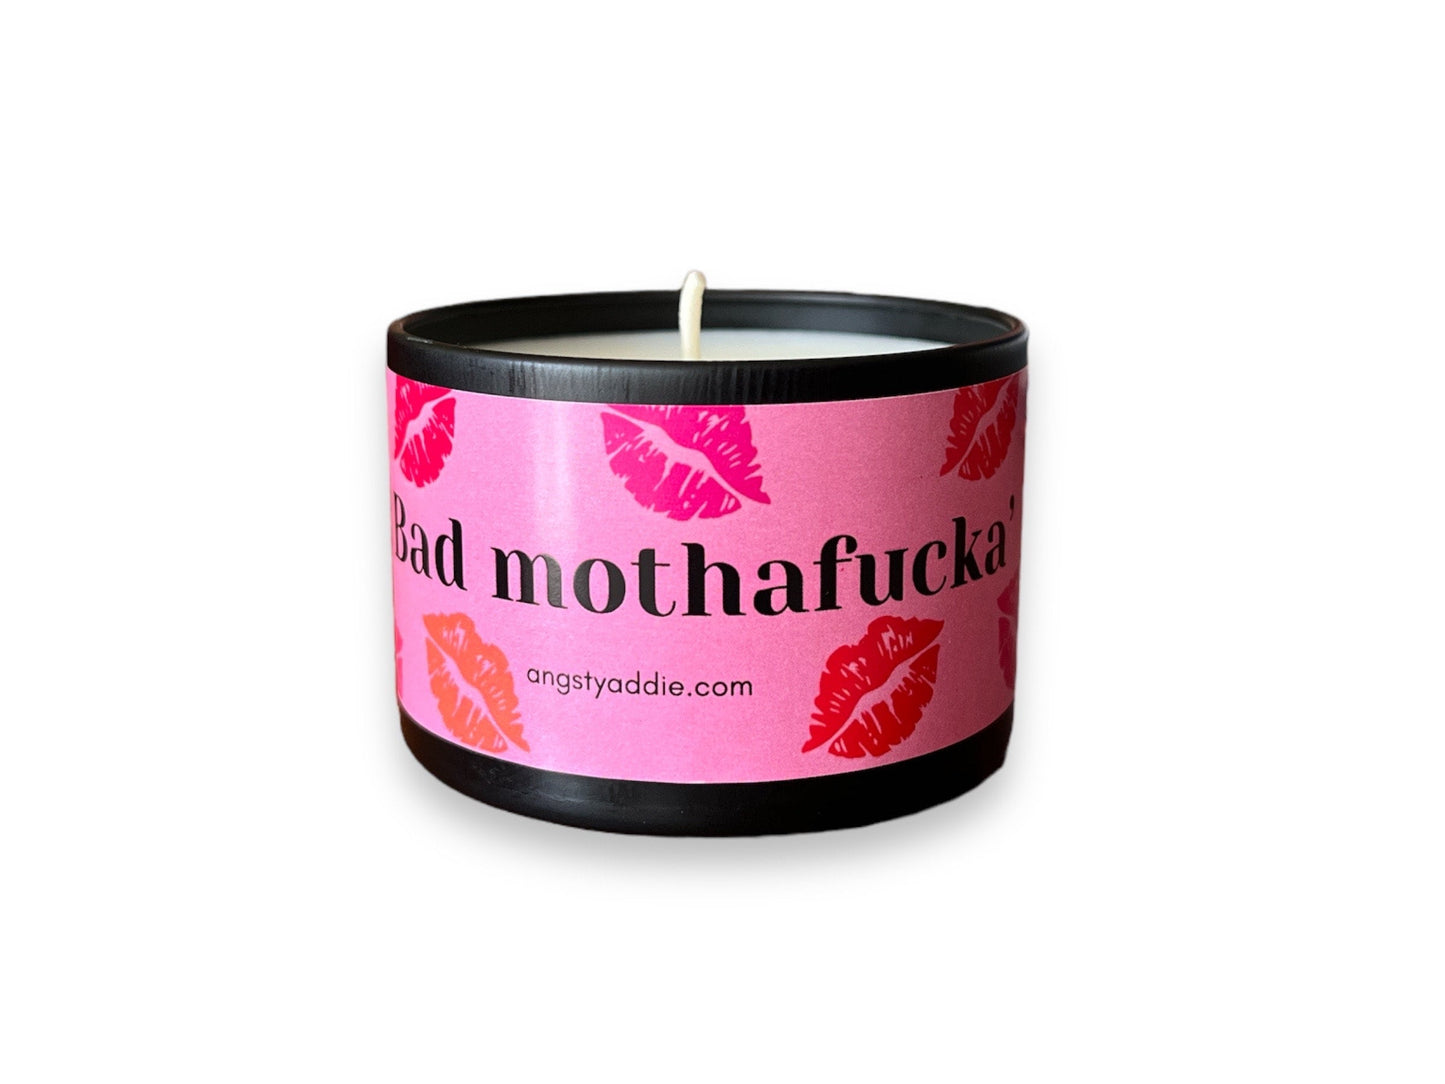 Bad Mothafucka' candle